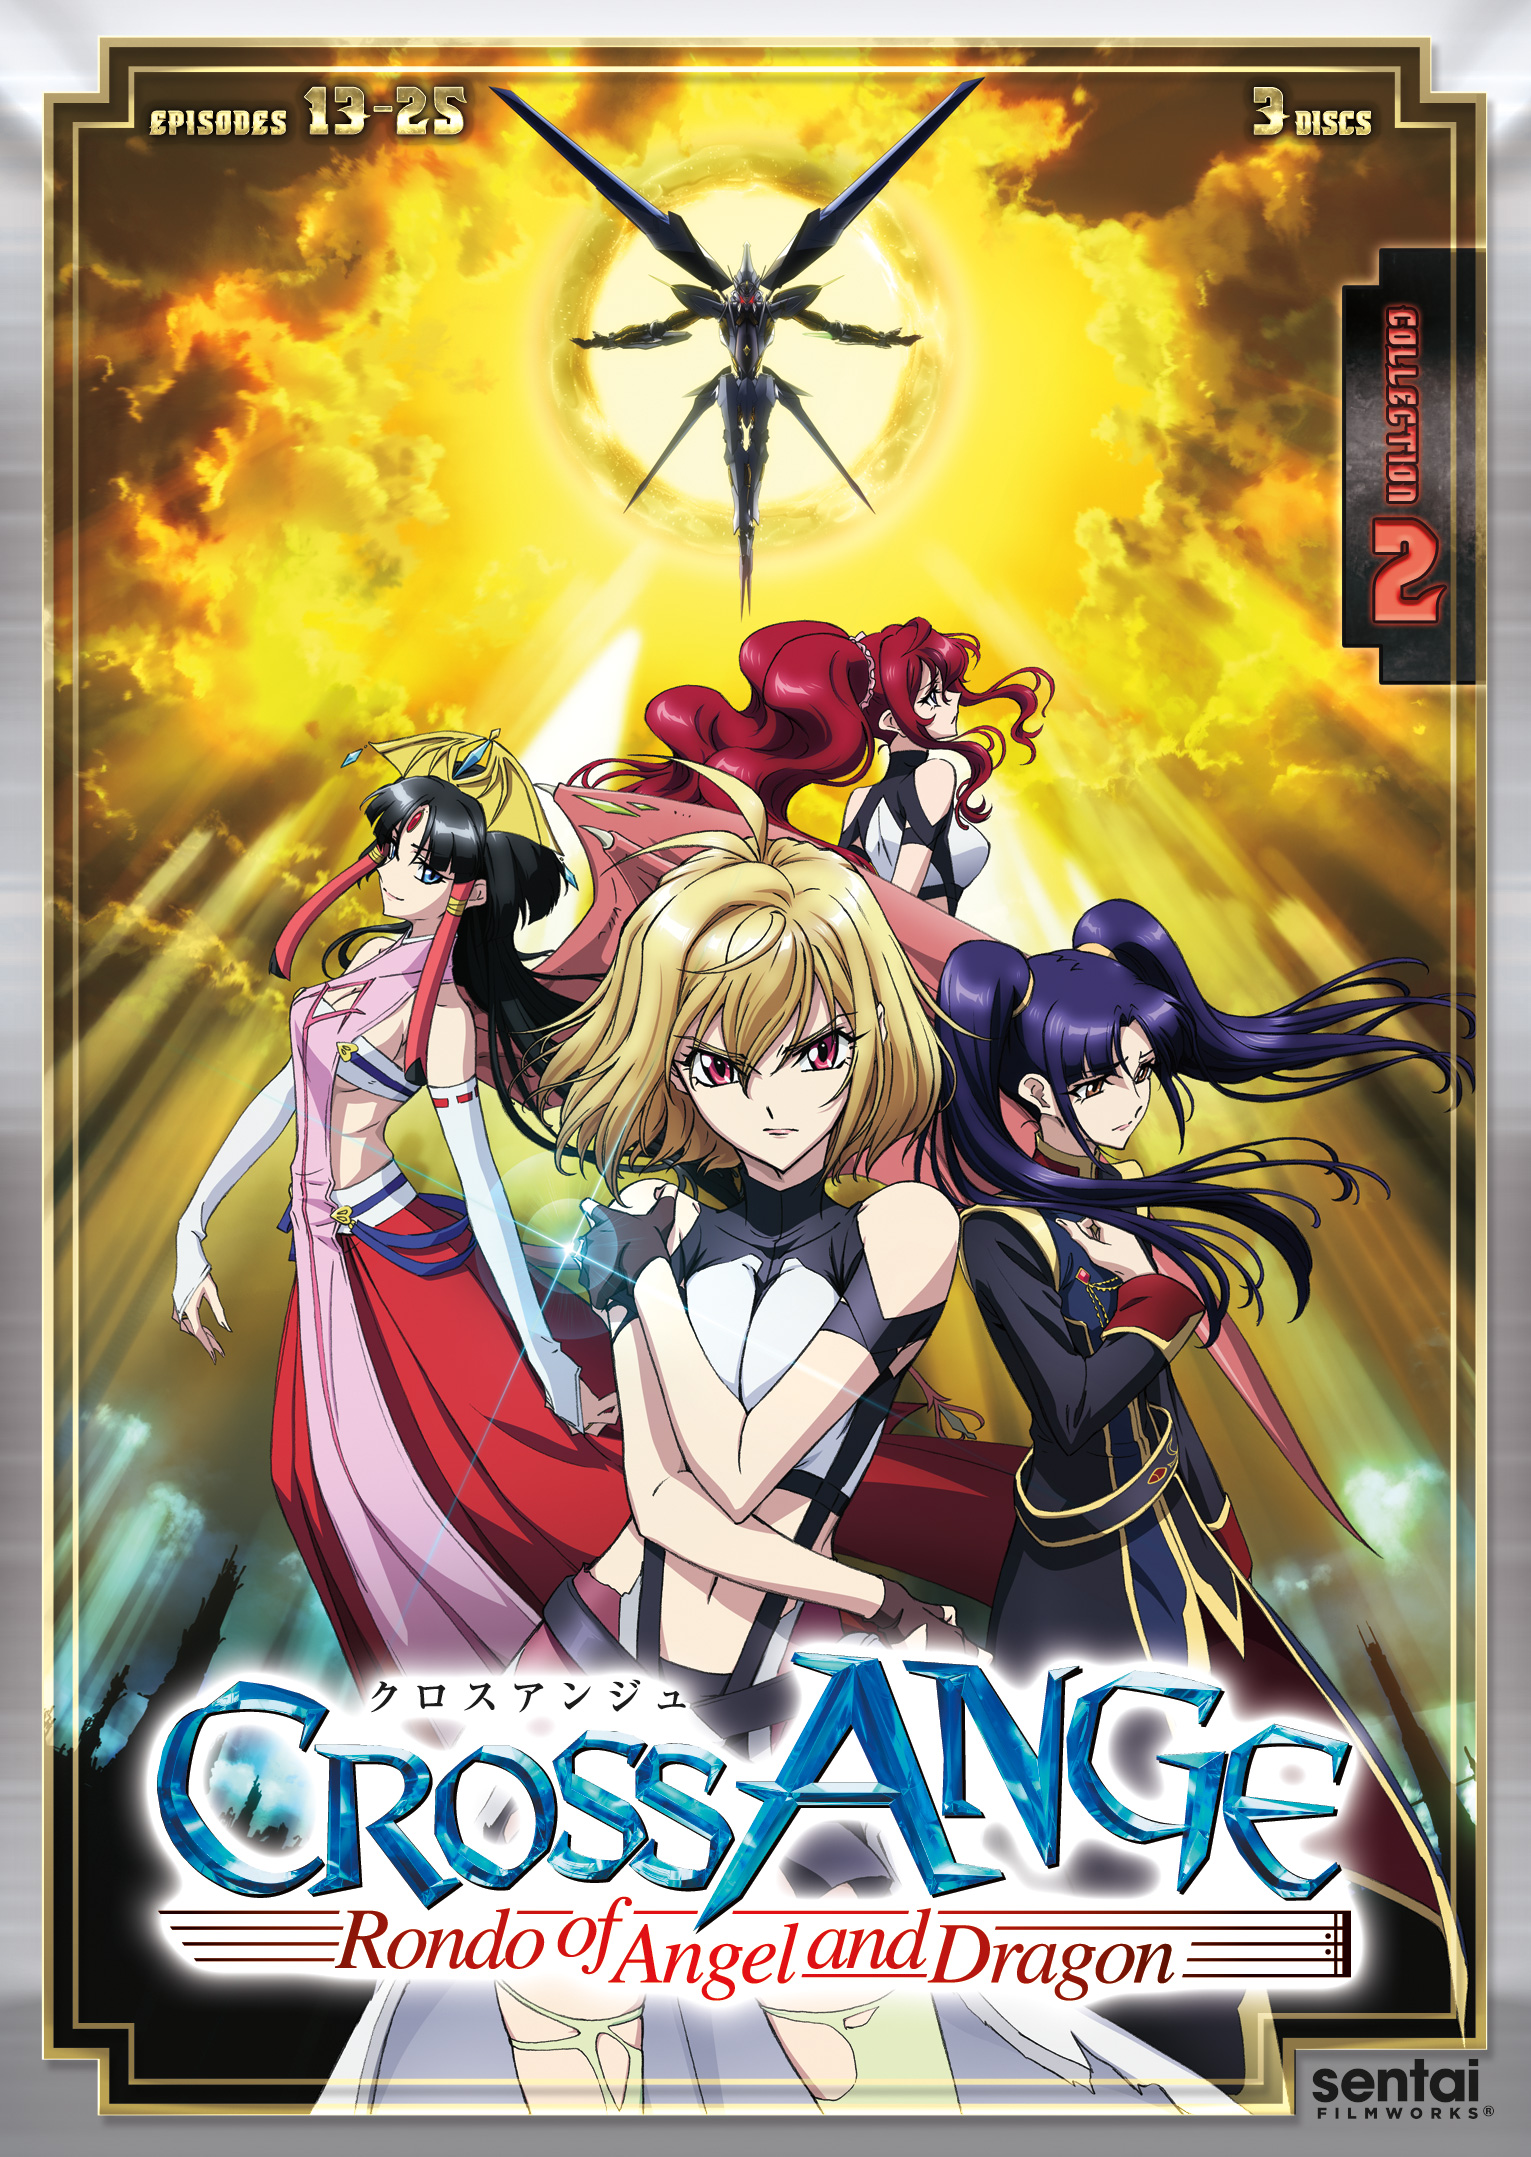 Cross ange season 2